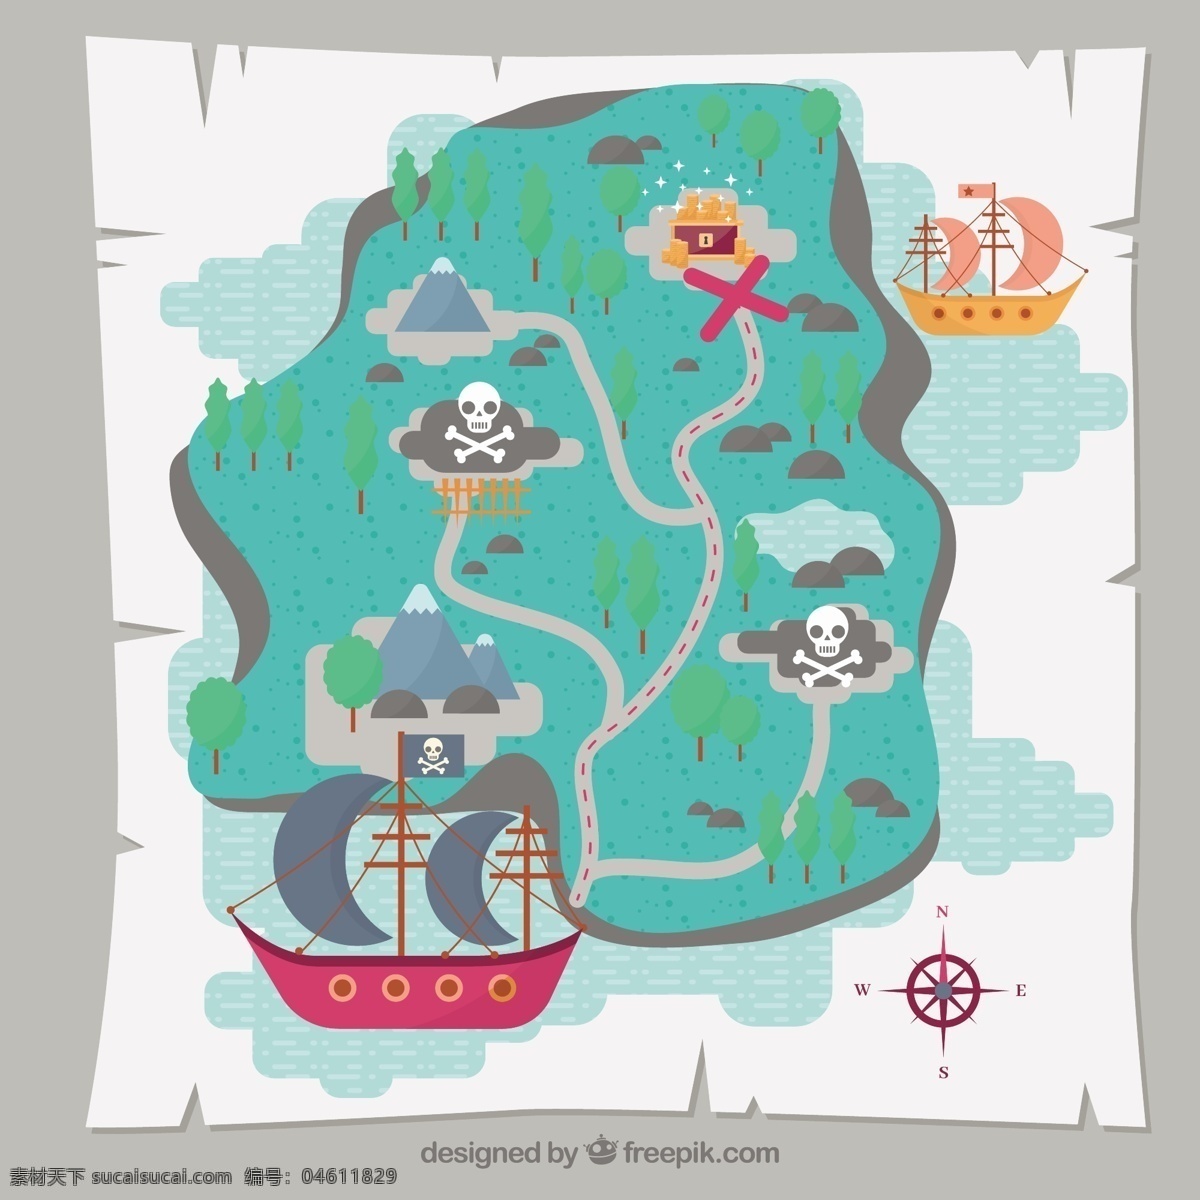 宝藏 地图 背景 海盗船 宝藏地图